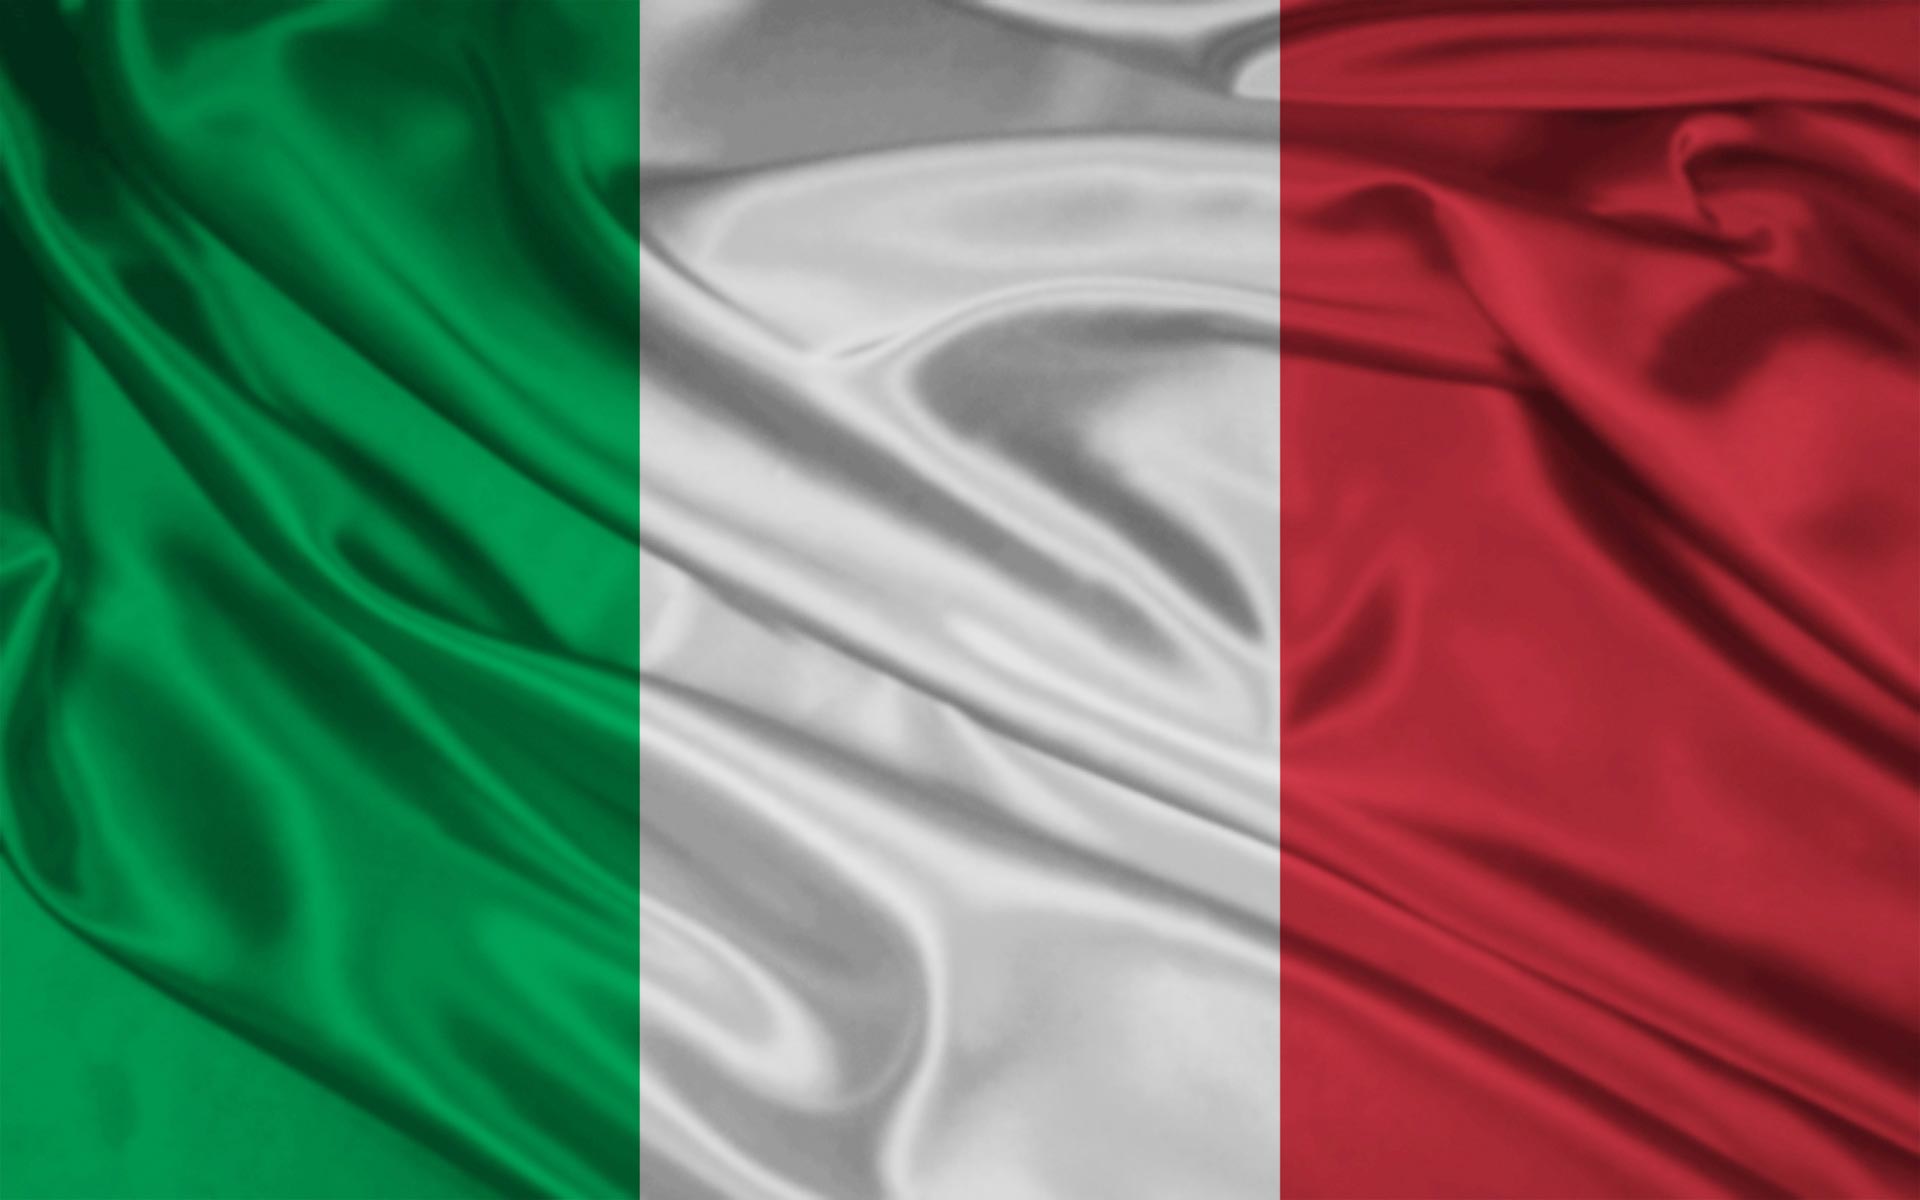 صحفية إيطالية تطالب بالكشف عن حقيقة دعم إيطالية للقوات البحرية وخفر السواحل الليبي